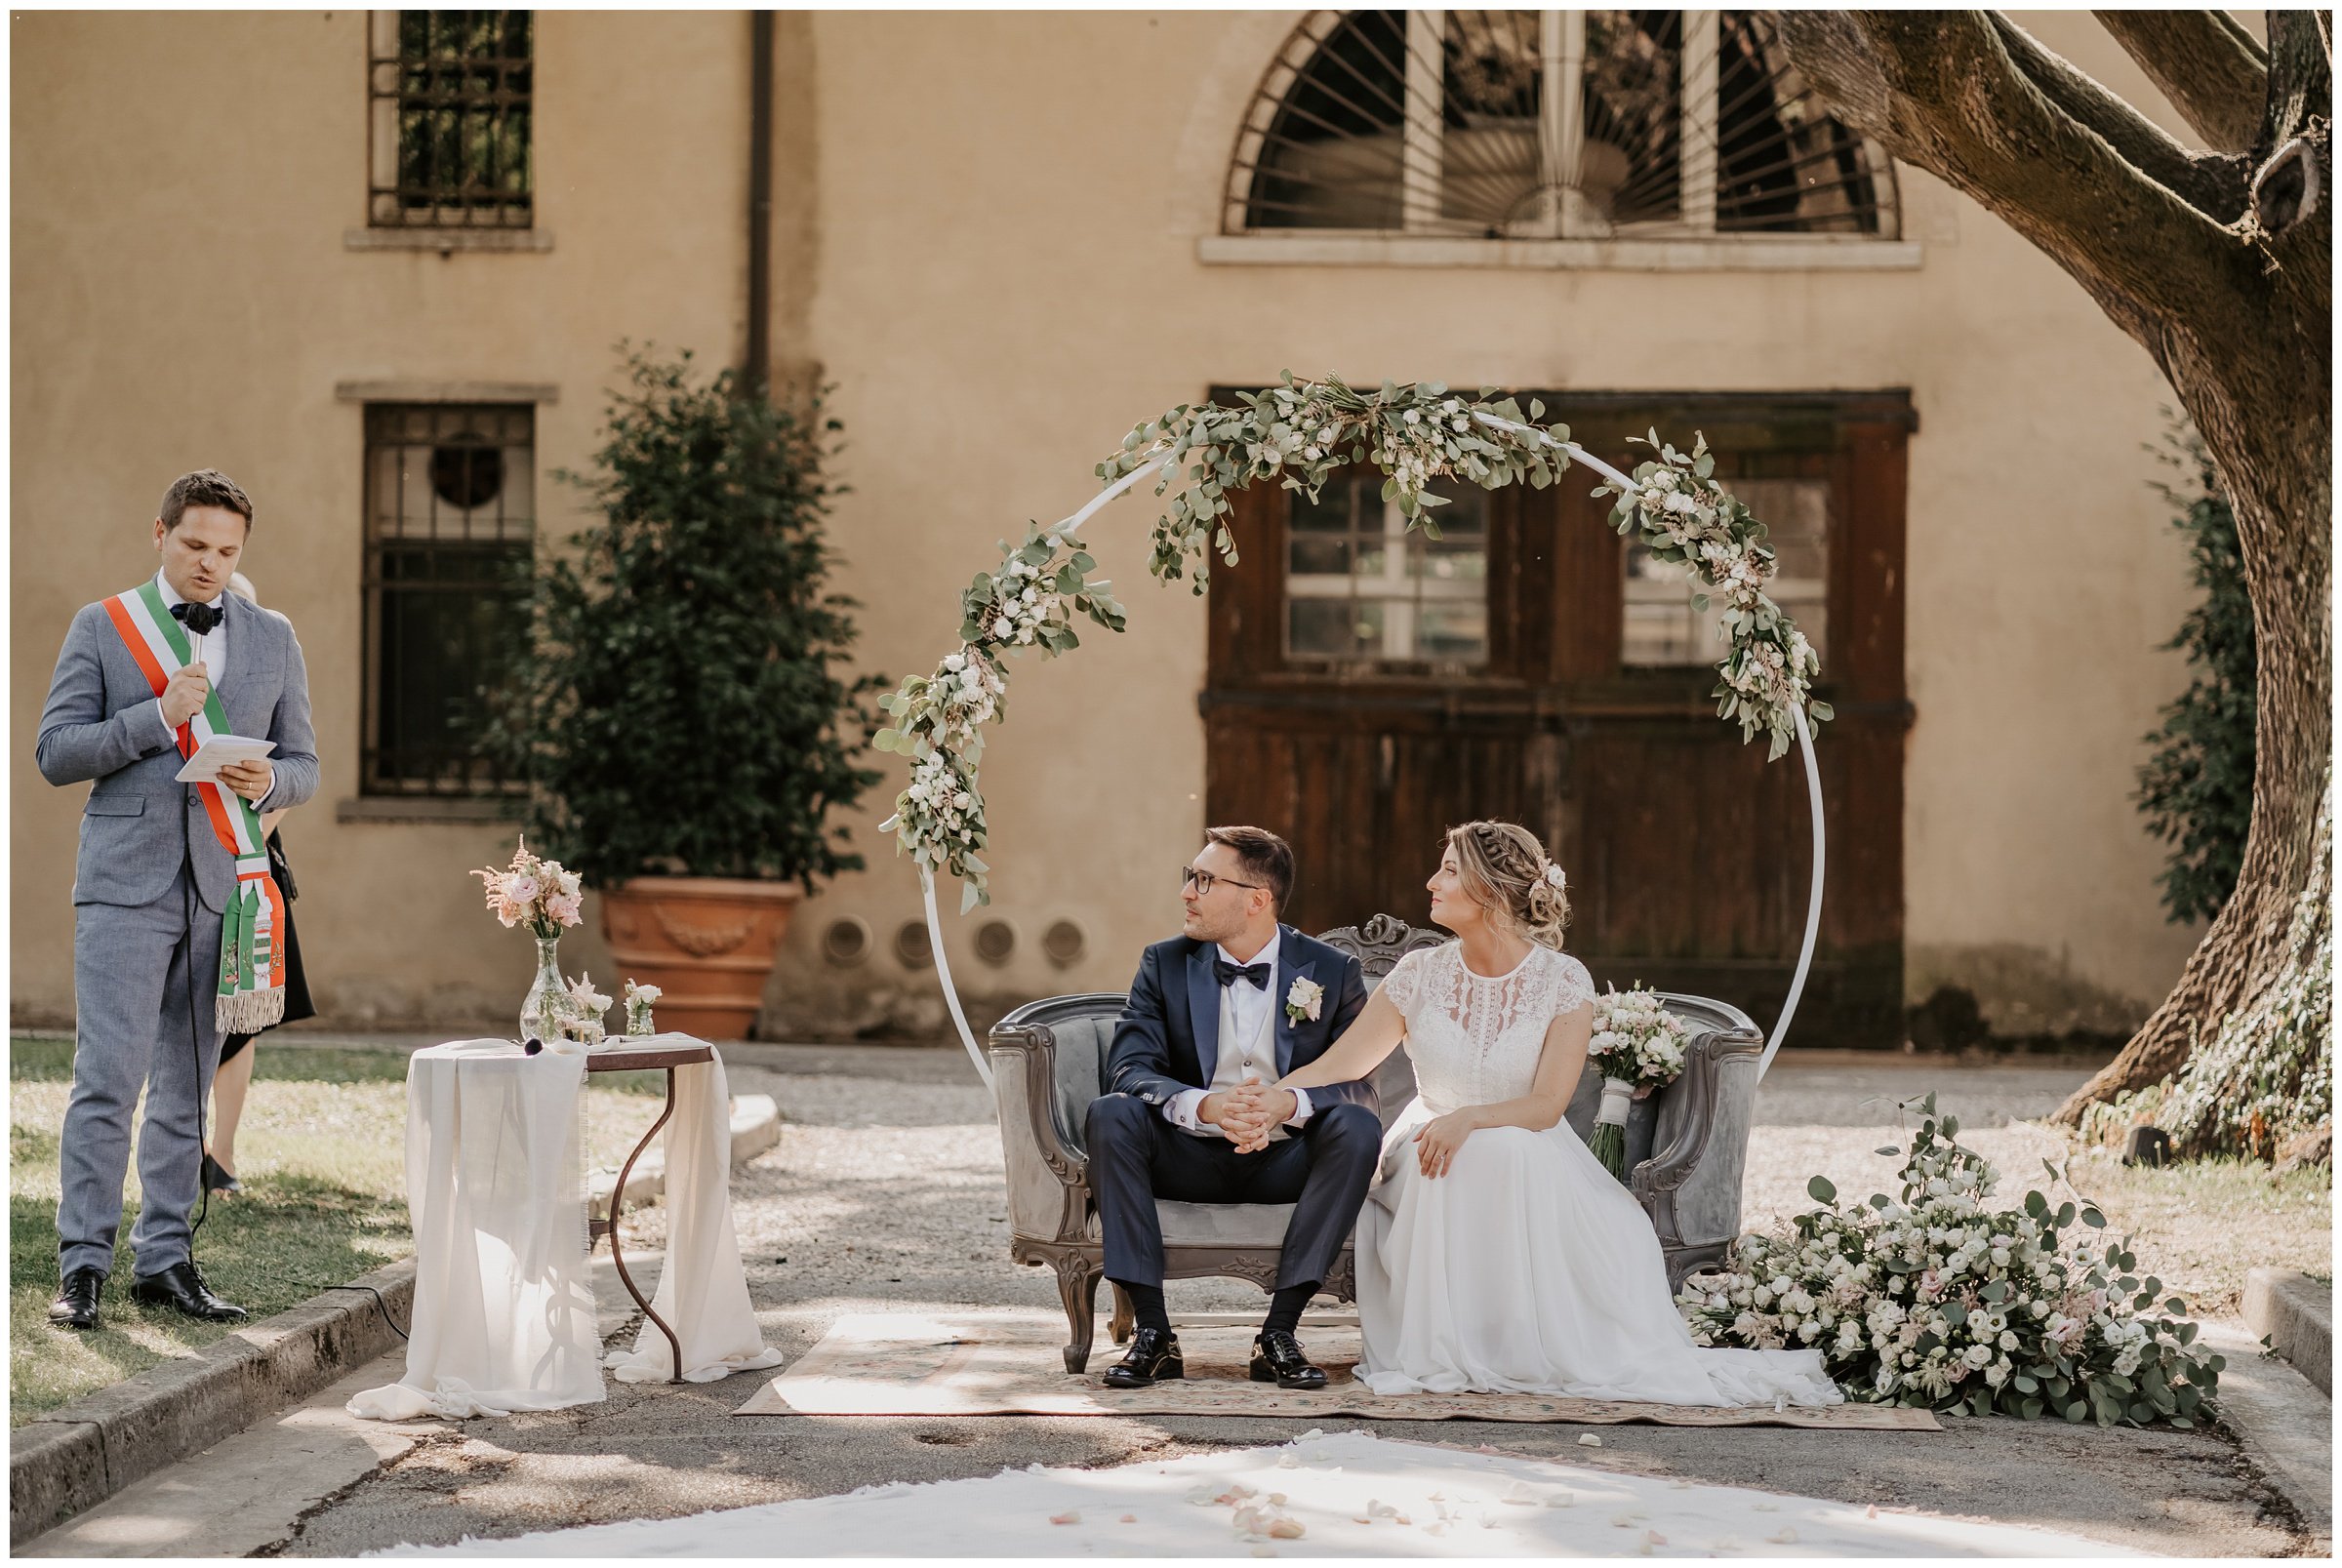 Matrimonio-villa-foscarini-cornaro-fotografo-matrimonio-treviso-fotografo-matrimonio-venezia-23.jpg